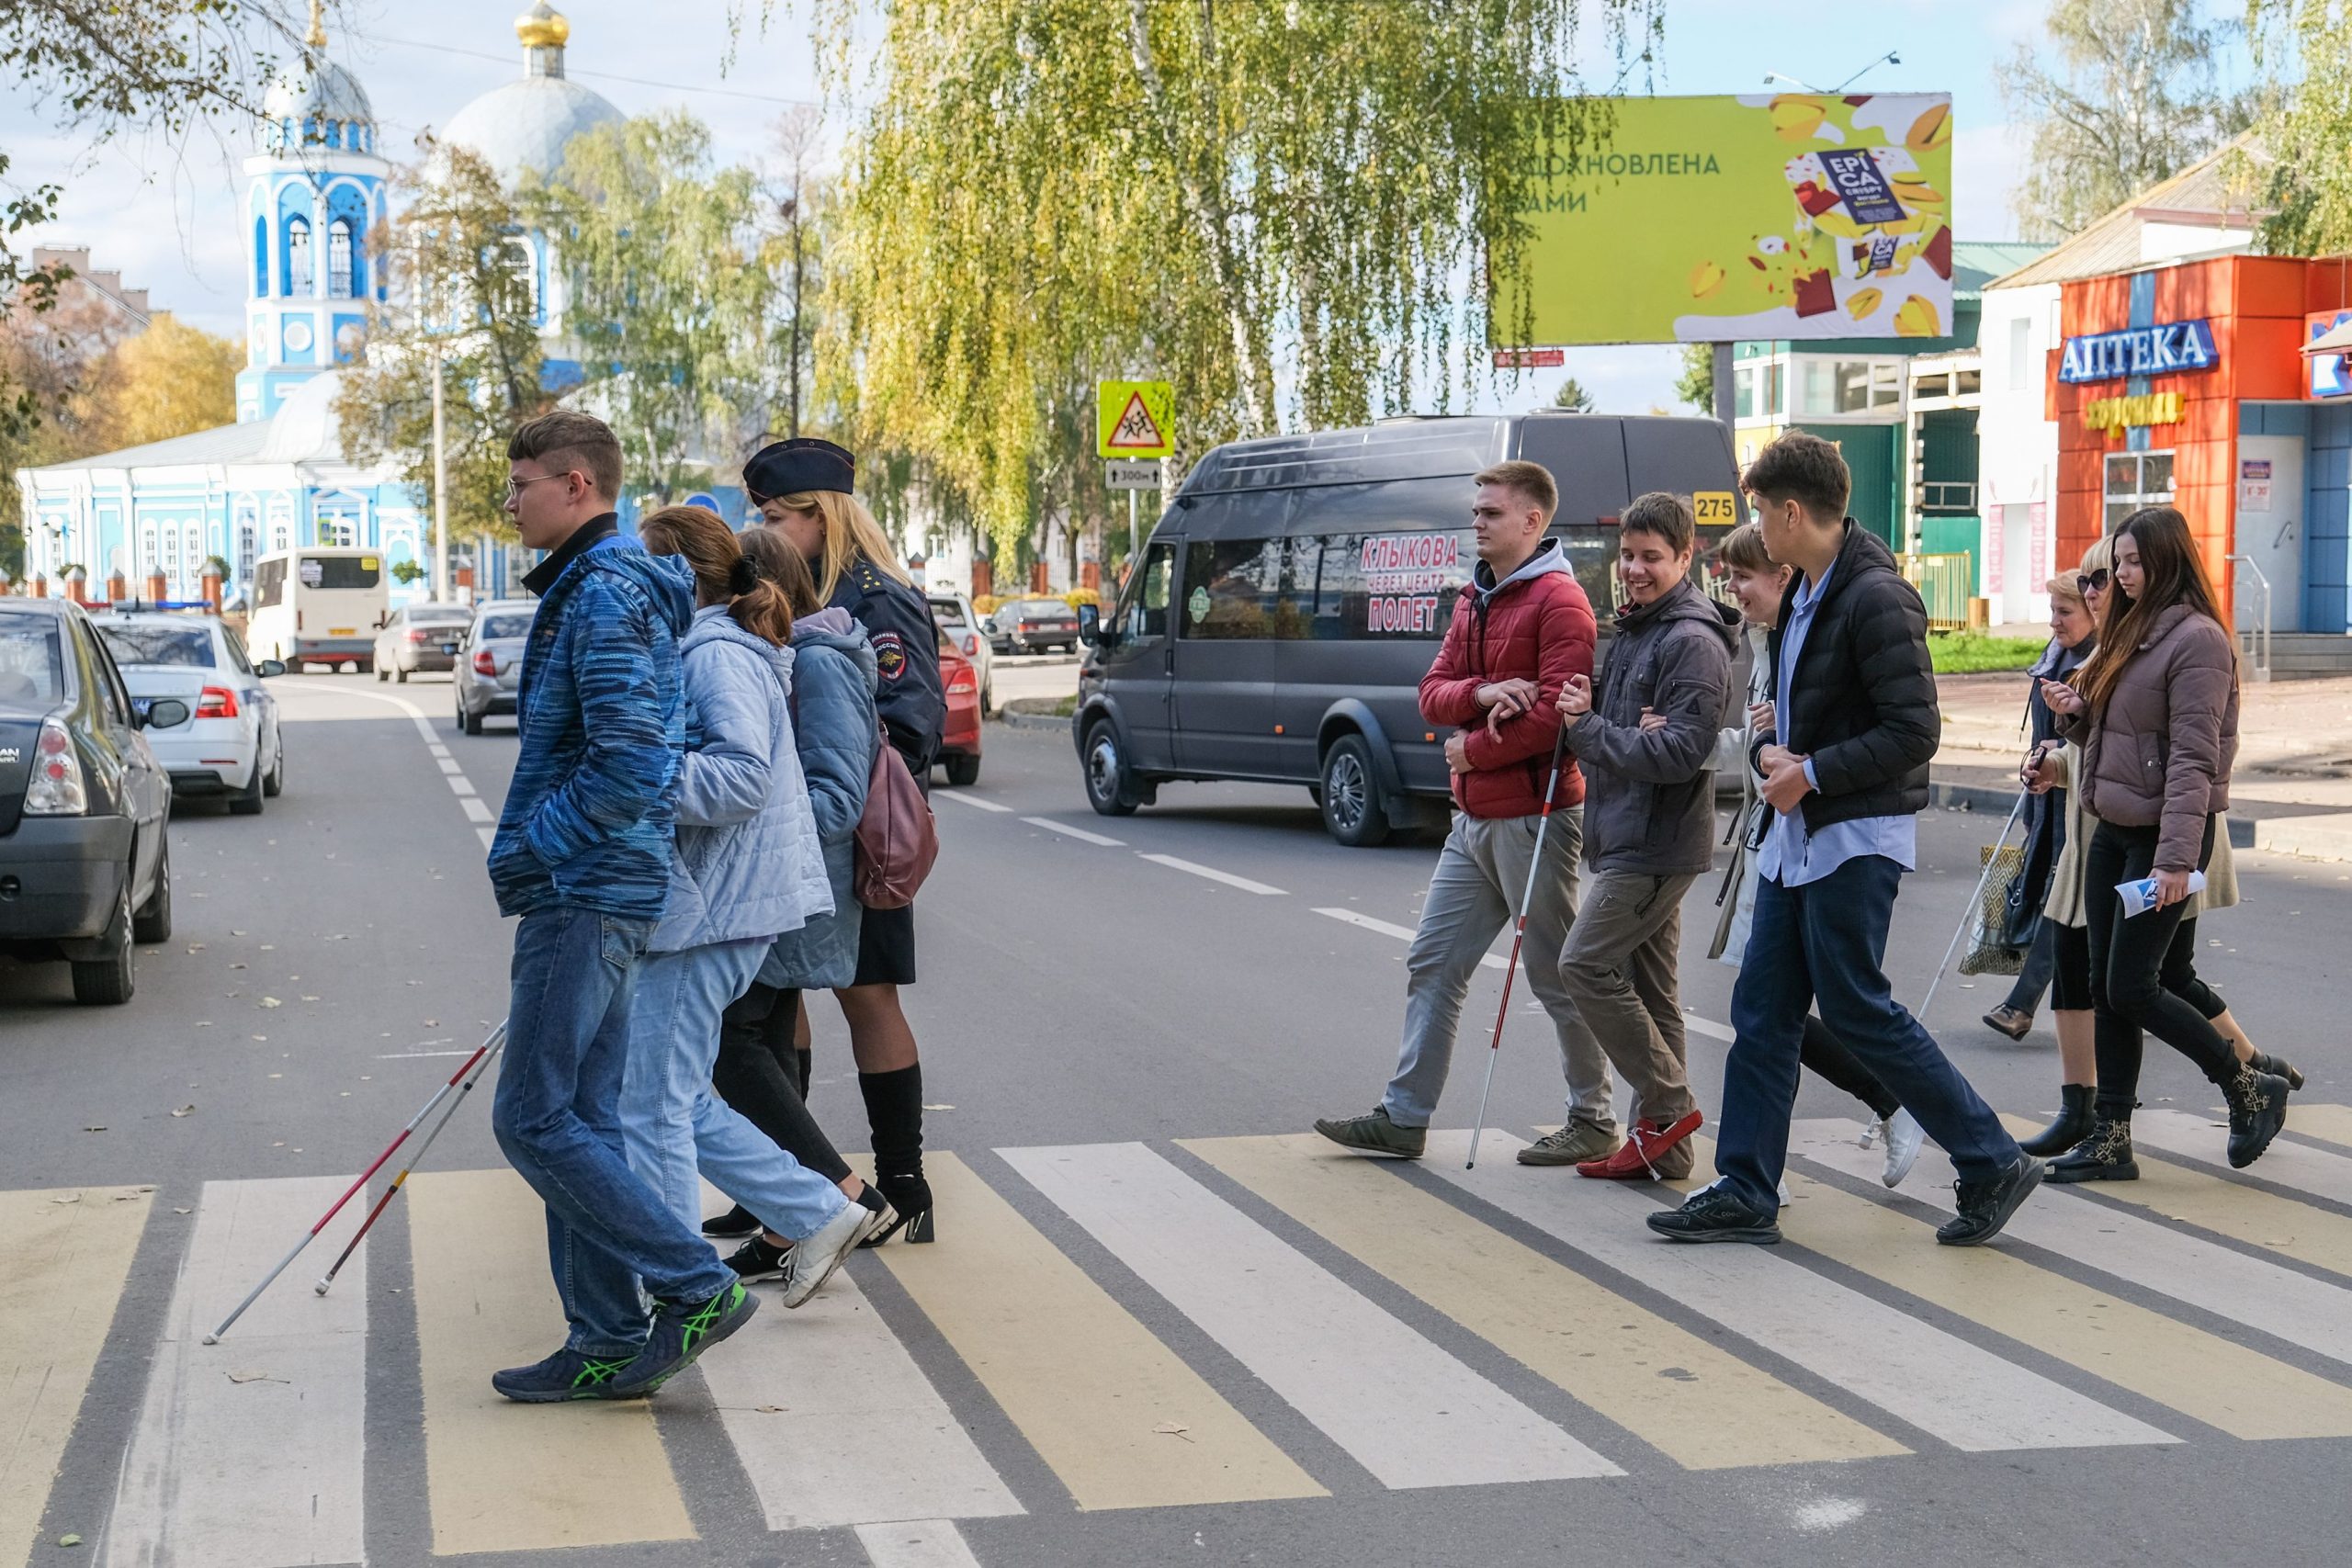 Пешеход россии. Пешеходный переход. Люди на пешеходном переходе. Люди в городе. Акция пешеход.